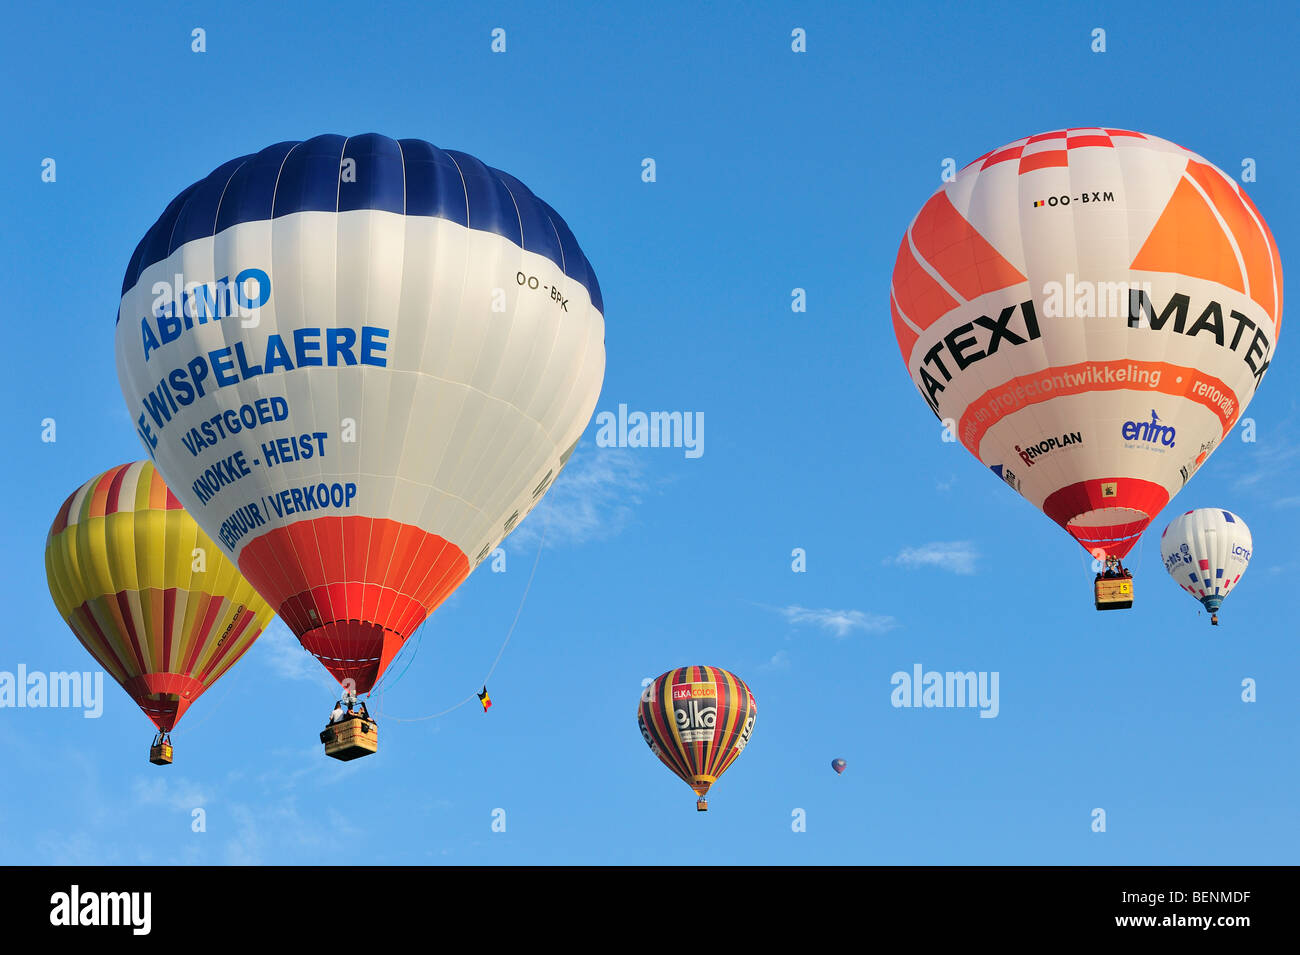 Aérostiers / Aéronautes ballons à air au cours de la réunion de la montgolfière Banque D'Images